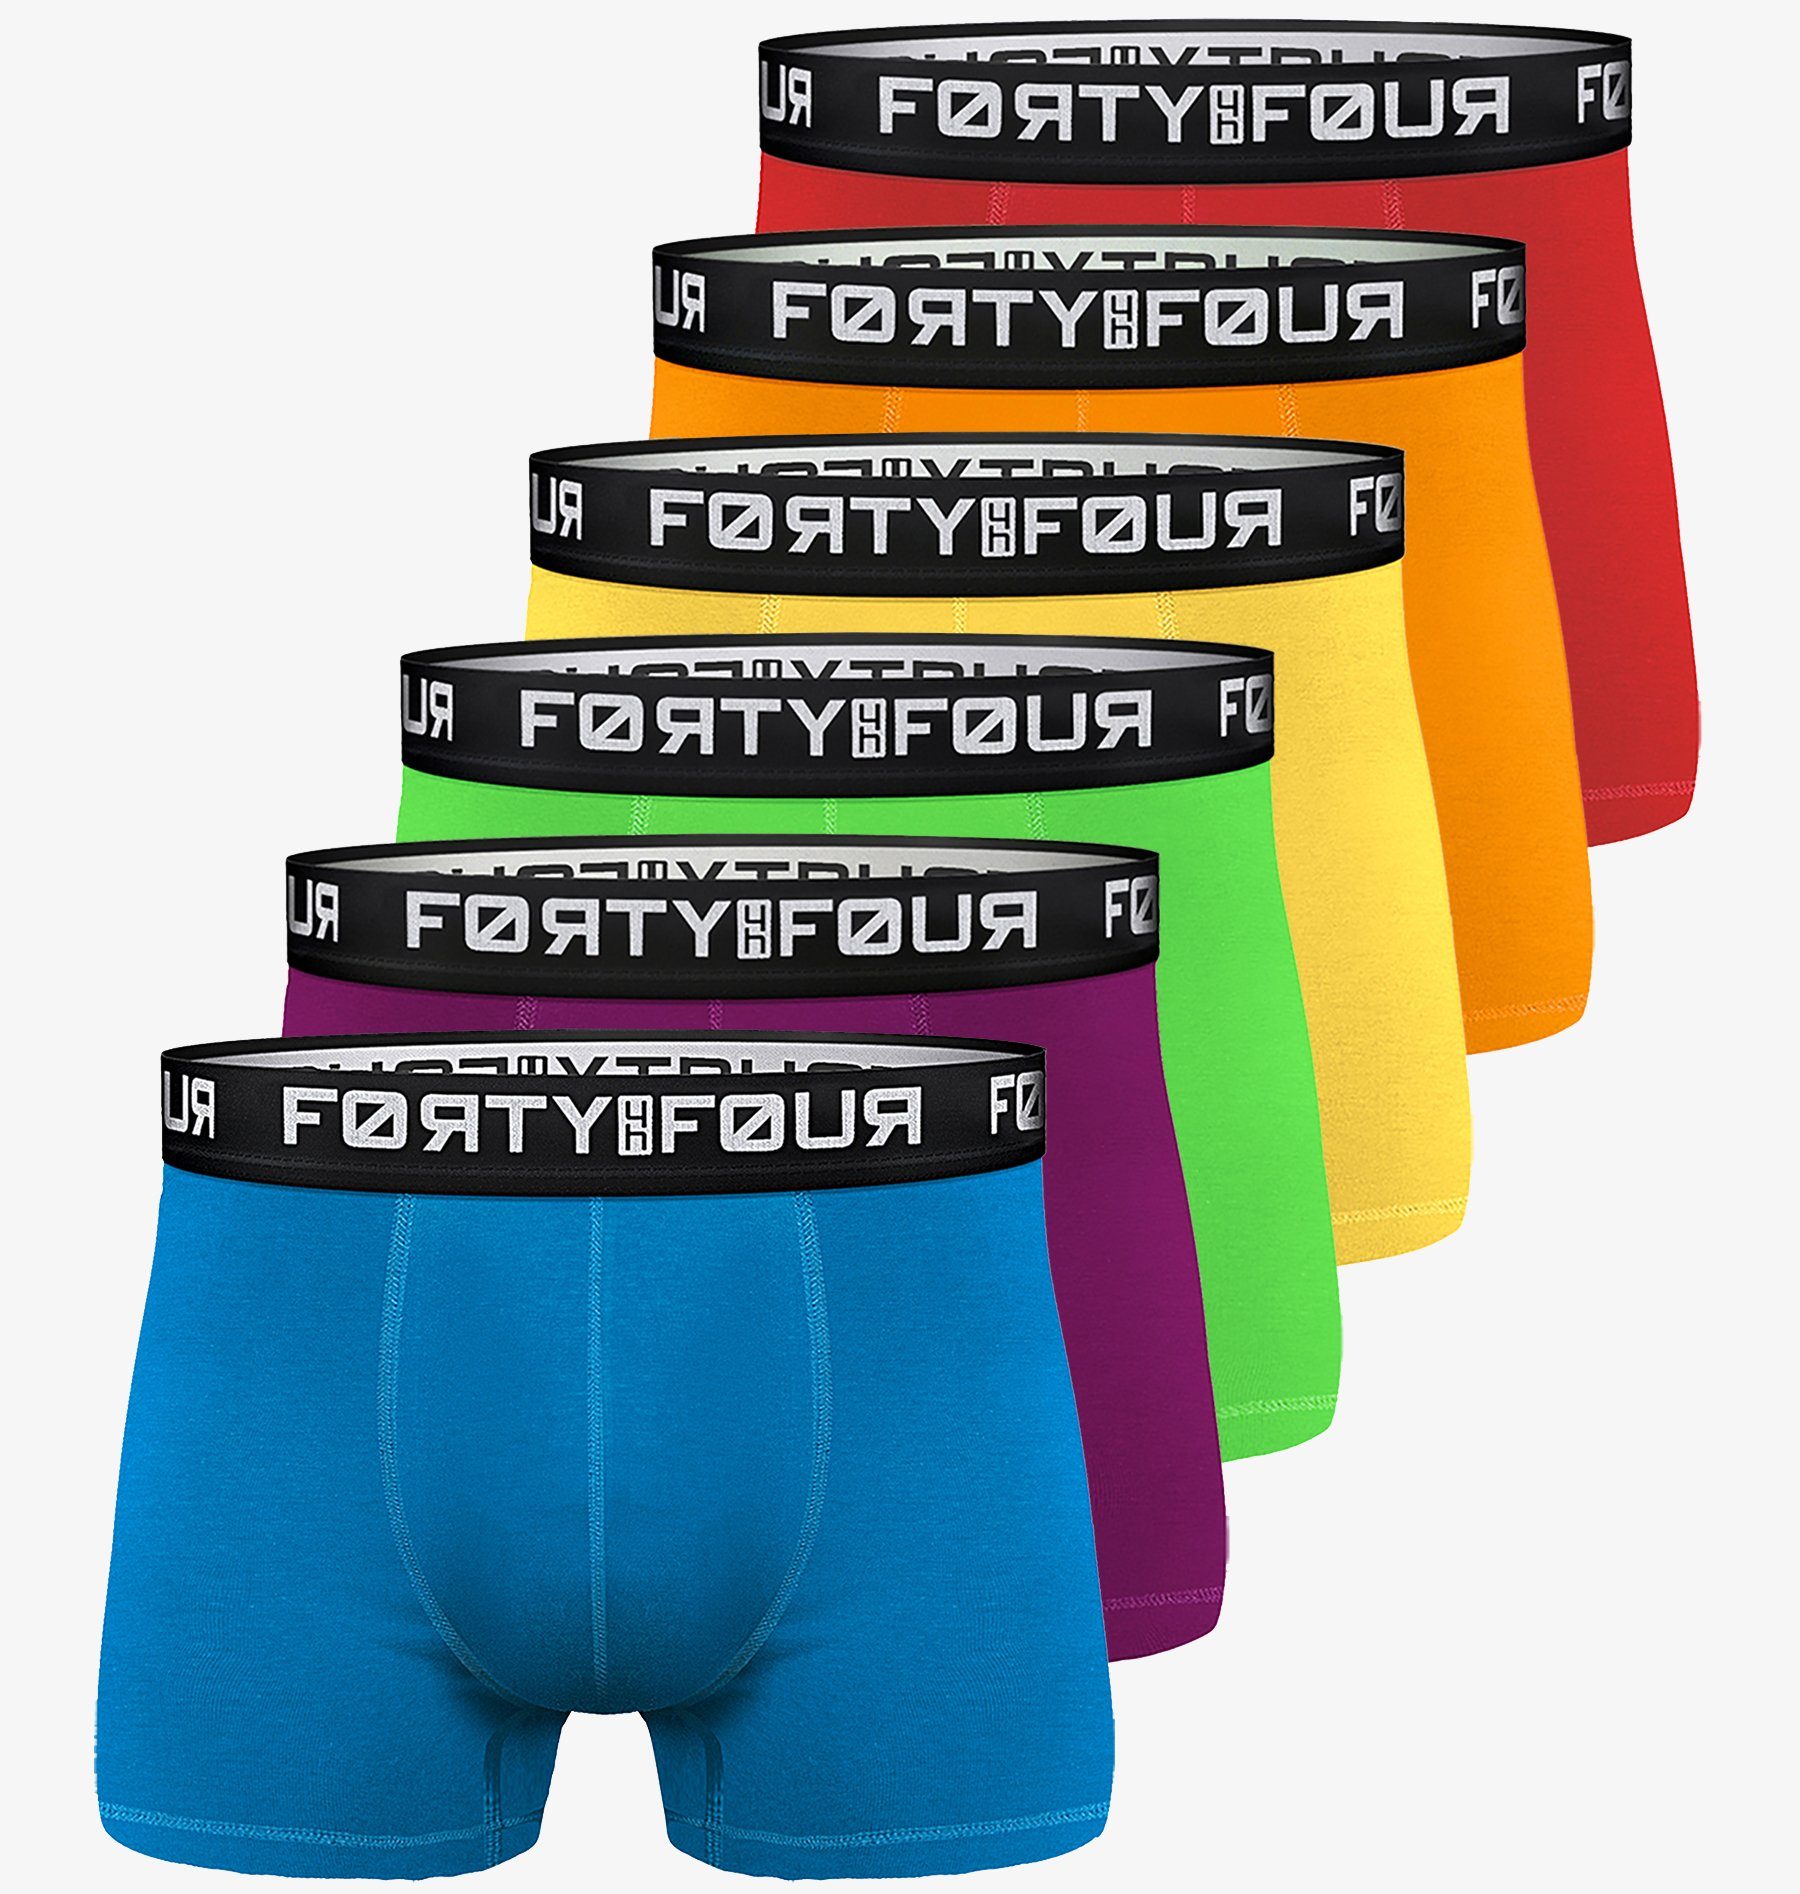 FortyFour Boxershorts - 706c-bunt Passform (Vorteilspack, S Premium perfekte 7XL Baumwolle Männer Qualität 6er Herren Unterhosen Pack)